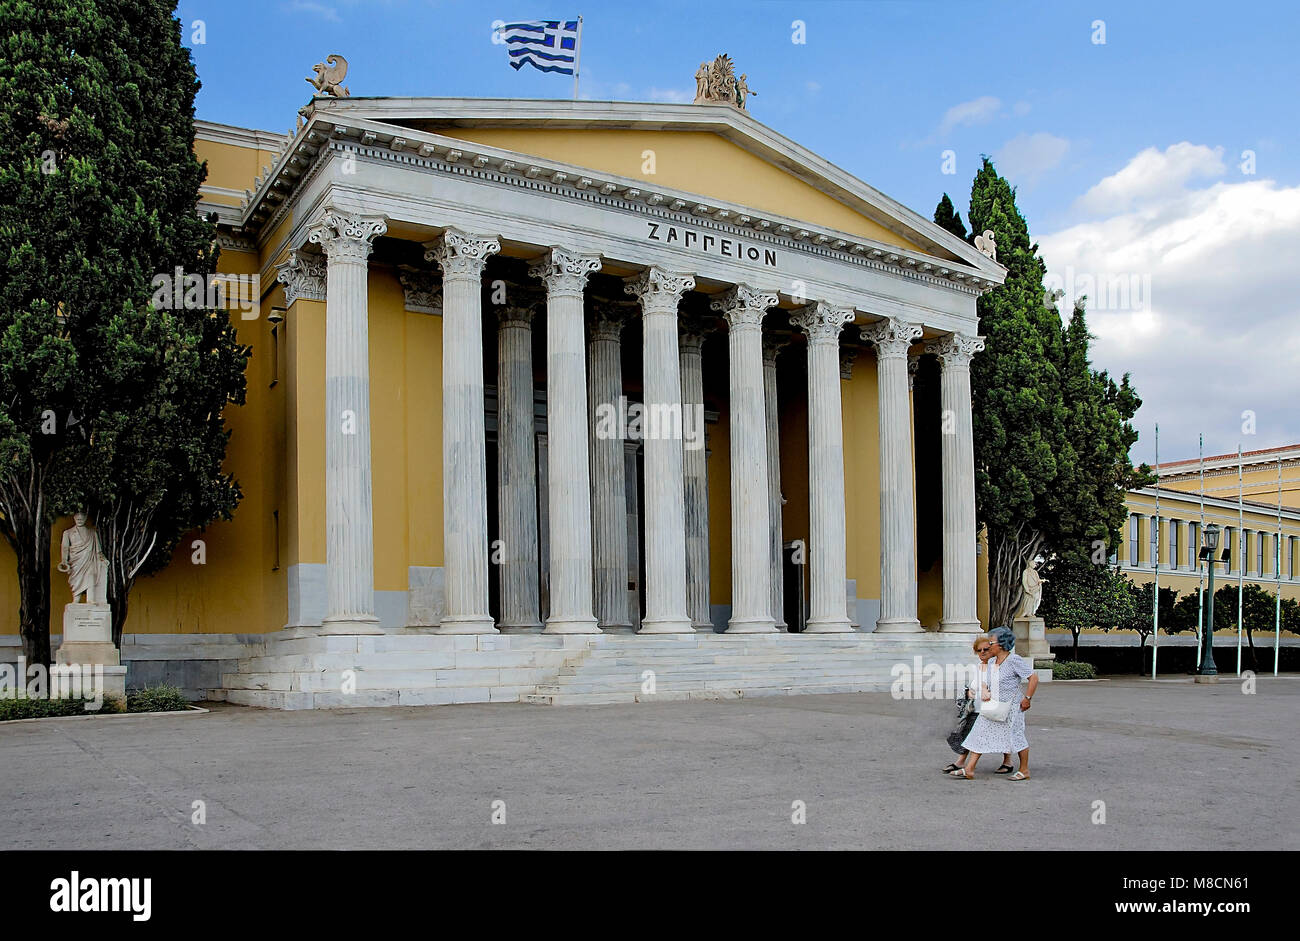 Athen - Griechenland - 01/31/2018: Zwei Großmütter zu Fuß außerhalb Zappeion Gebäude. Zappeion ist eines der wichtigsten Gebäude in Athen. Heute ist es o Stockfoto